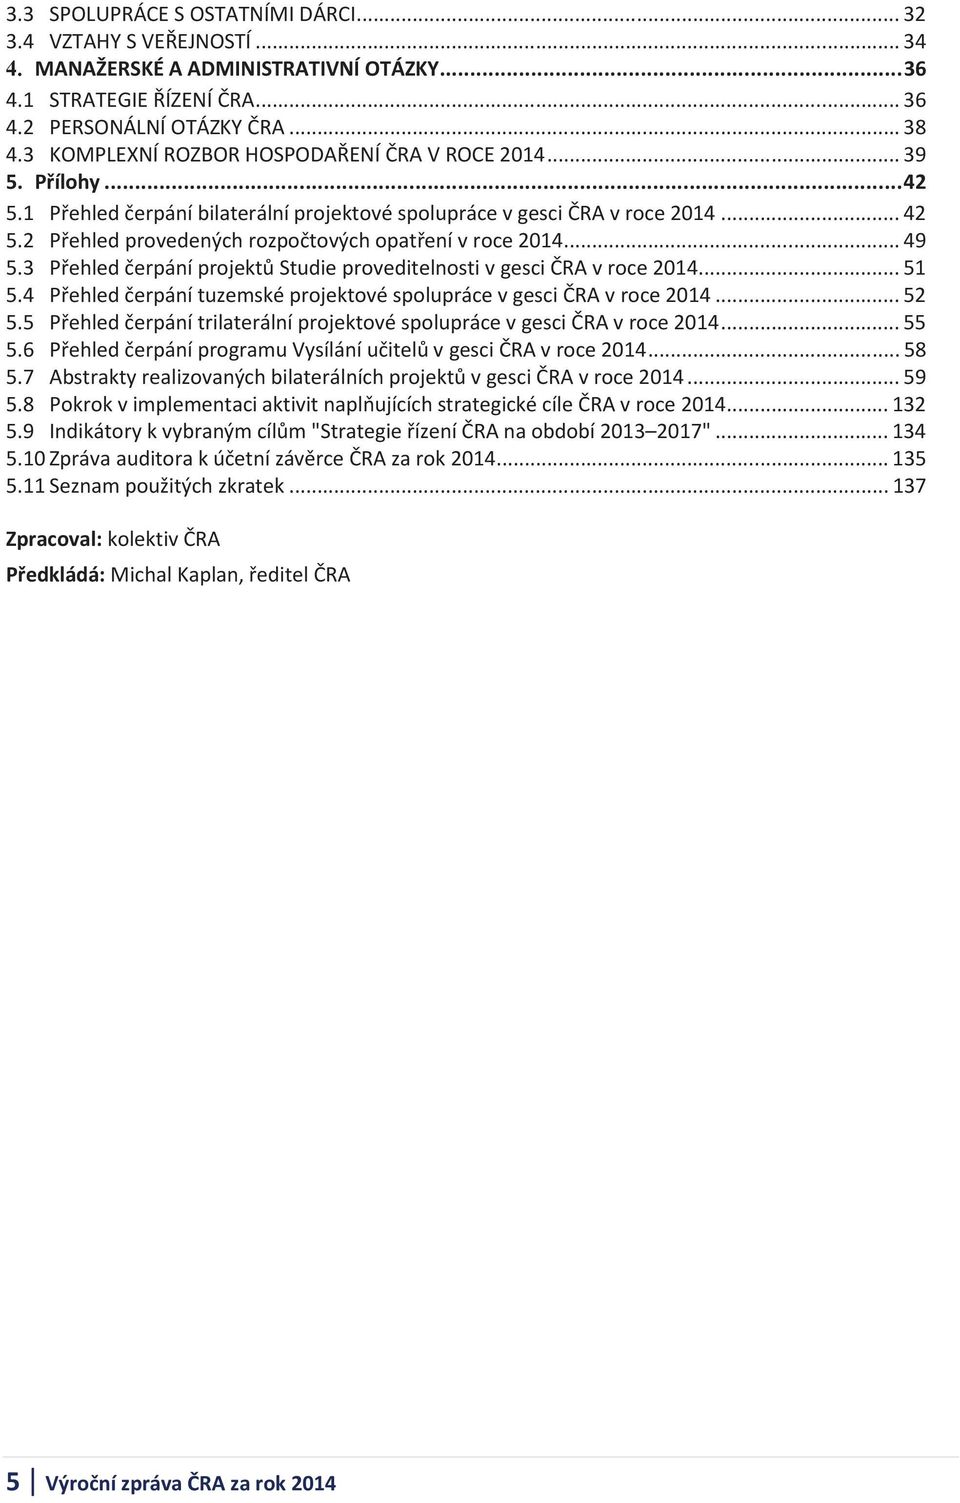 .. 49 5.3 Přehled čerpání projektů Studie proveditelnosti v gesci ČRA v roce 2014... 51 5.4 Přehled čerpání tuzemské projektové spolupráce v gesci ČRA v roce 2014... 52 5.